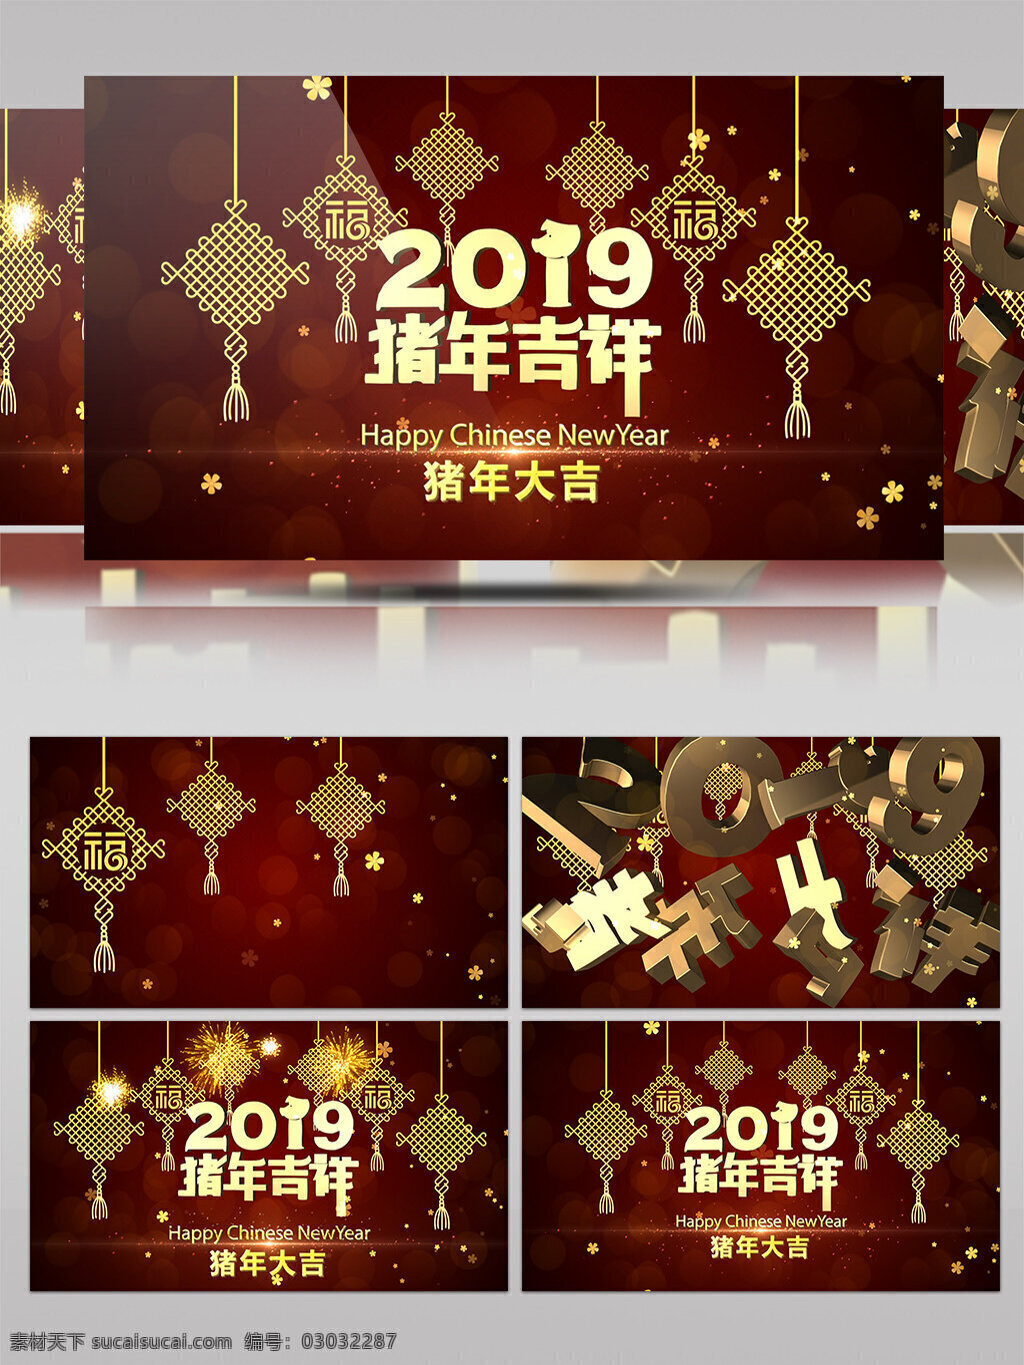 2019 猪年 喜庆 片头 ae 模板 灯笼 中国风 红色 金色 花朵 生肖 动物猪 新年 礼花 烟花 春节